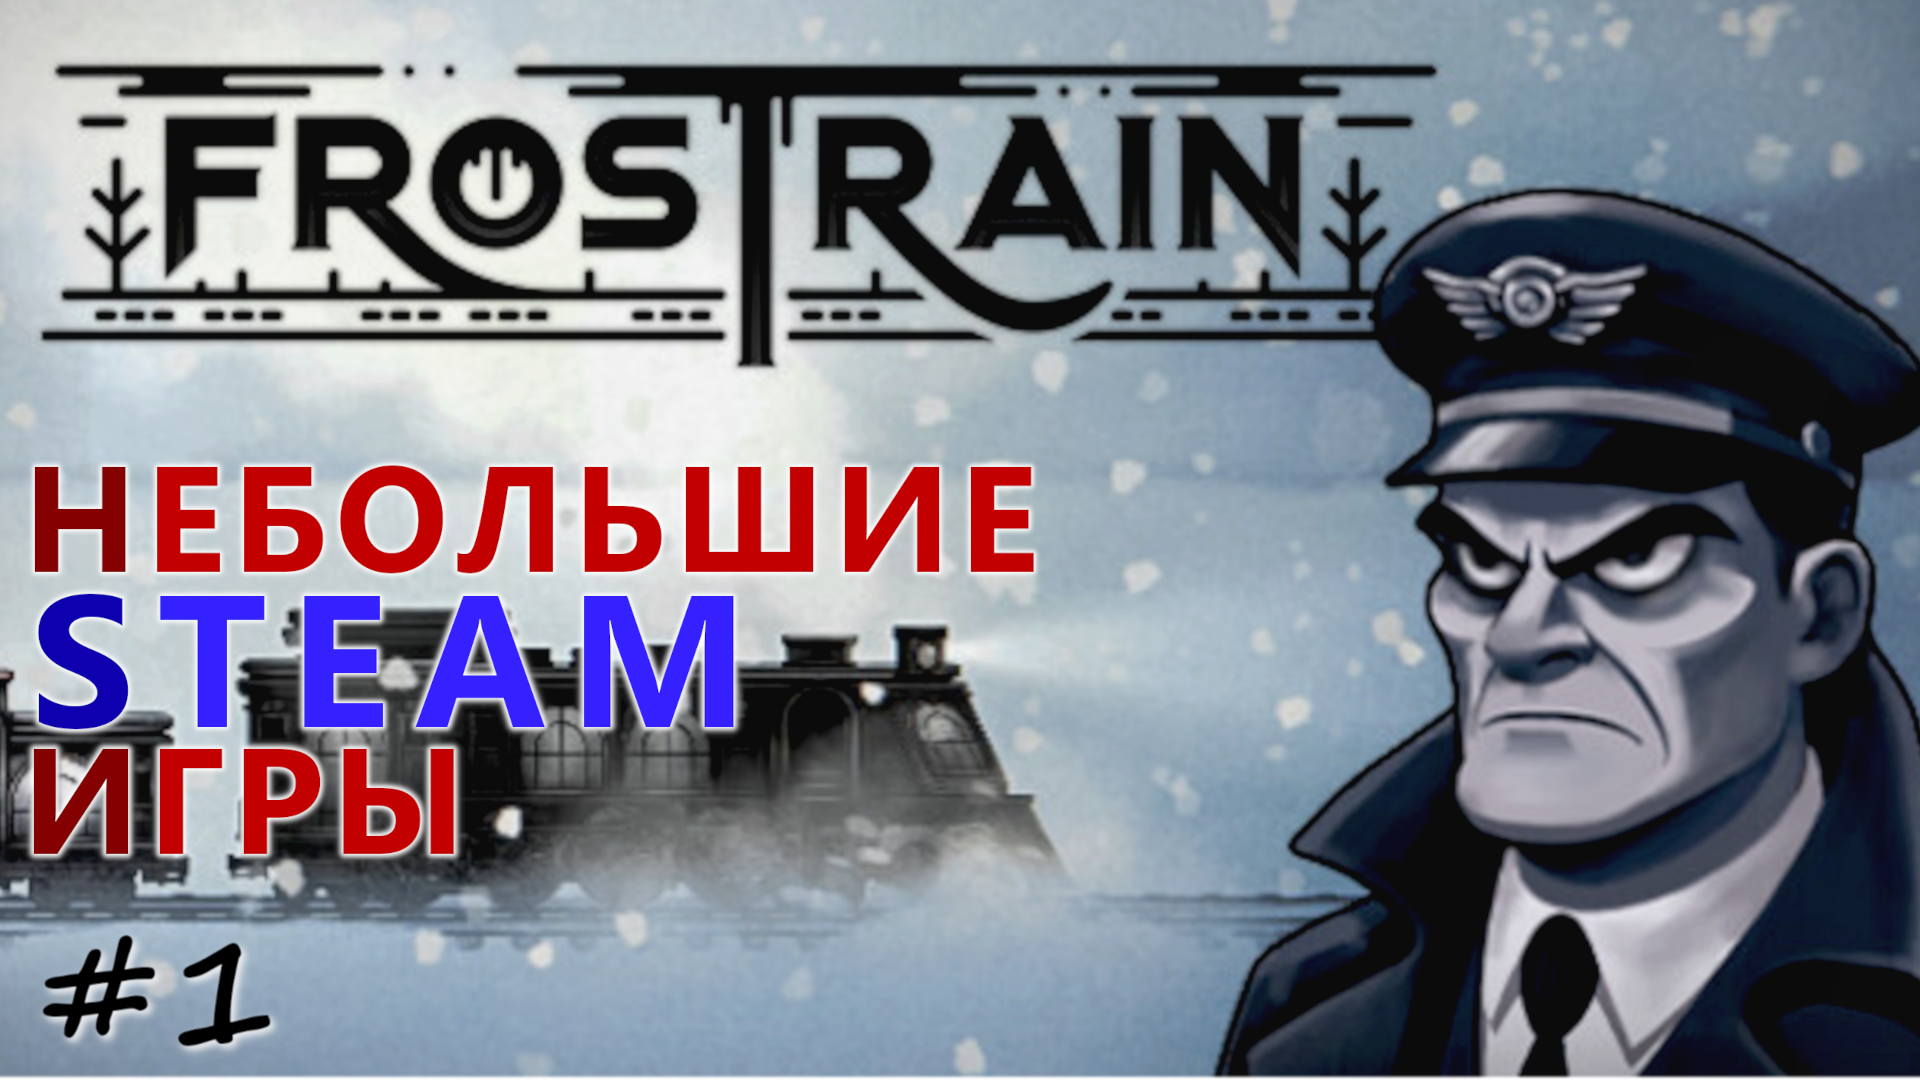 Frostrain - Небольшие Steam Игры - #1